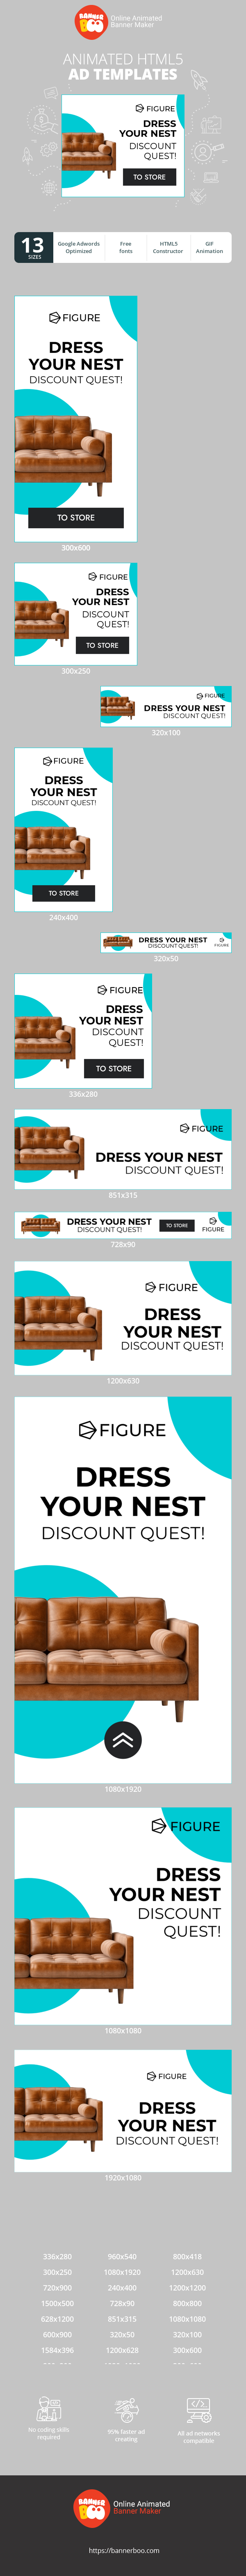 Szablon reklamy banerowej — Dress Your Nest Discount Quest! — Furniture Sale